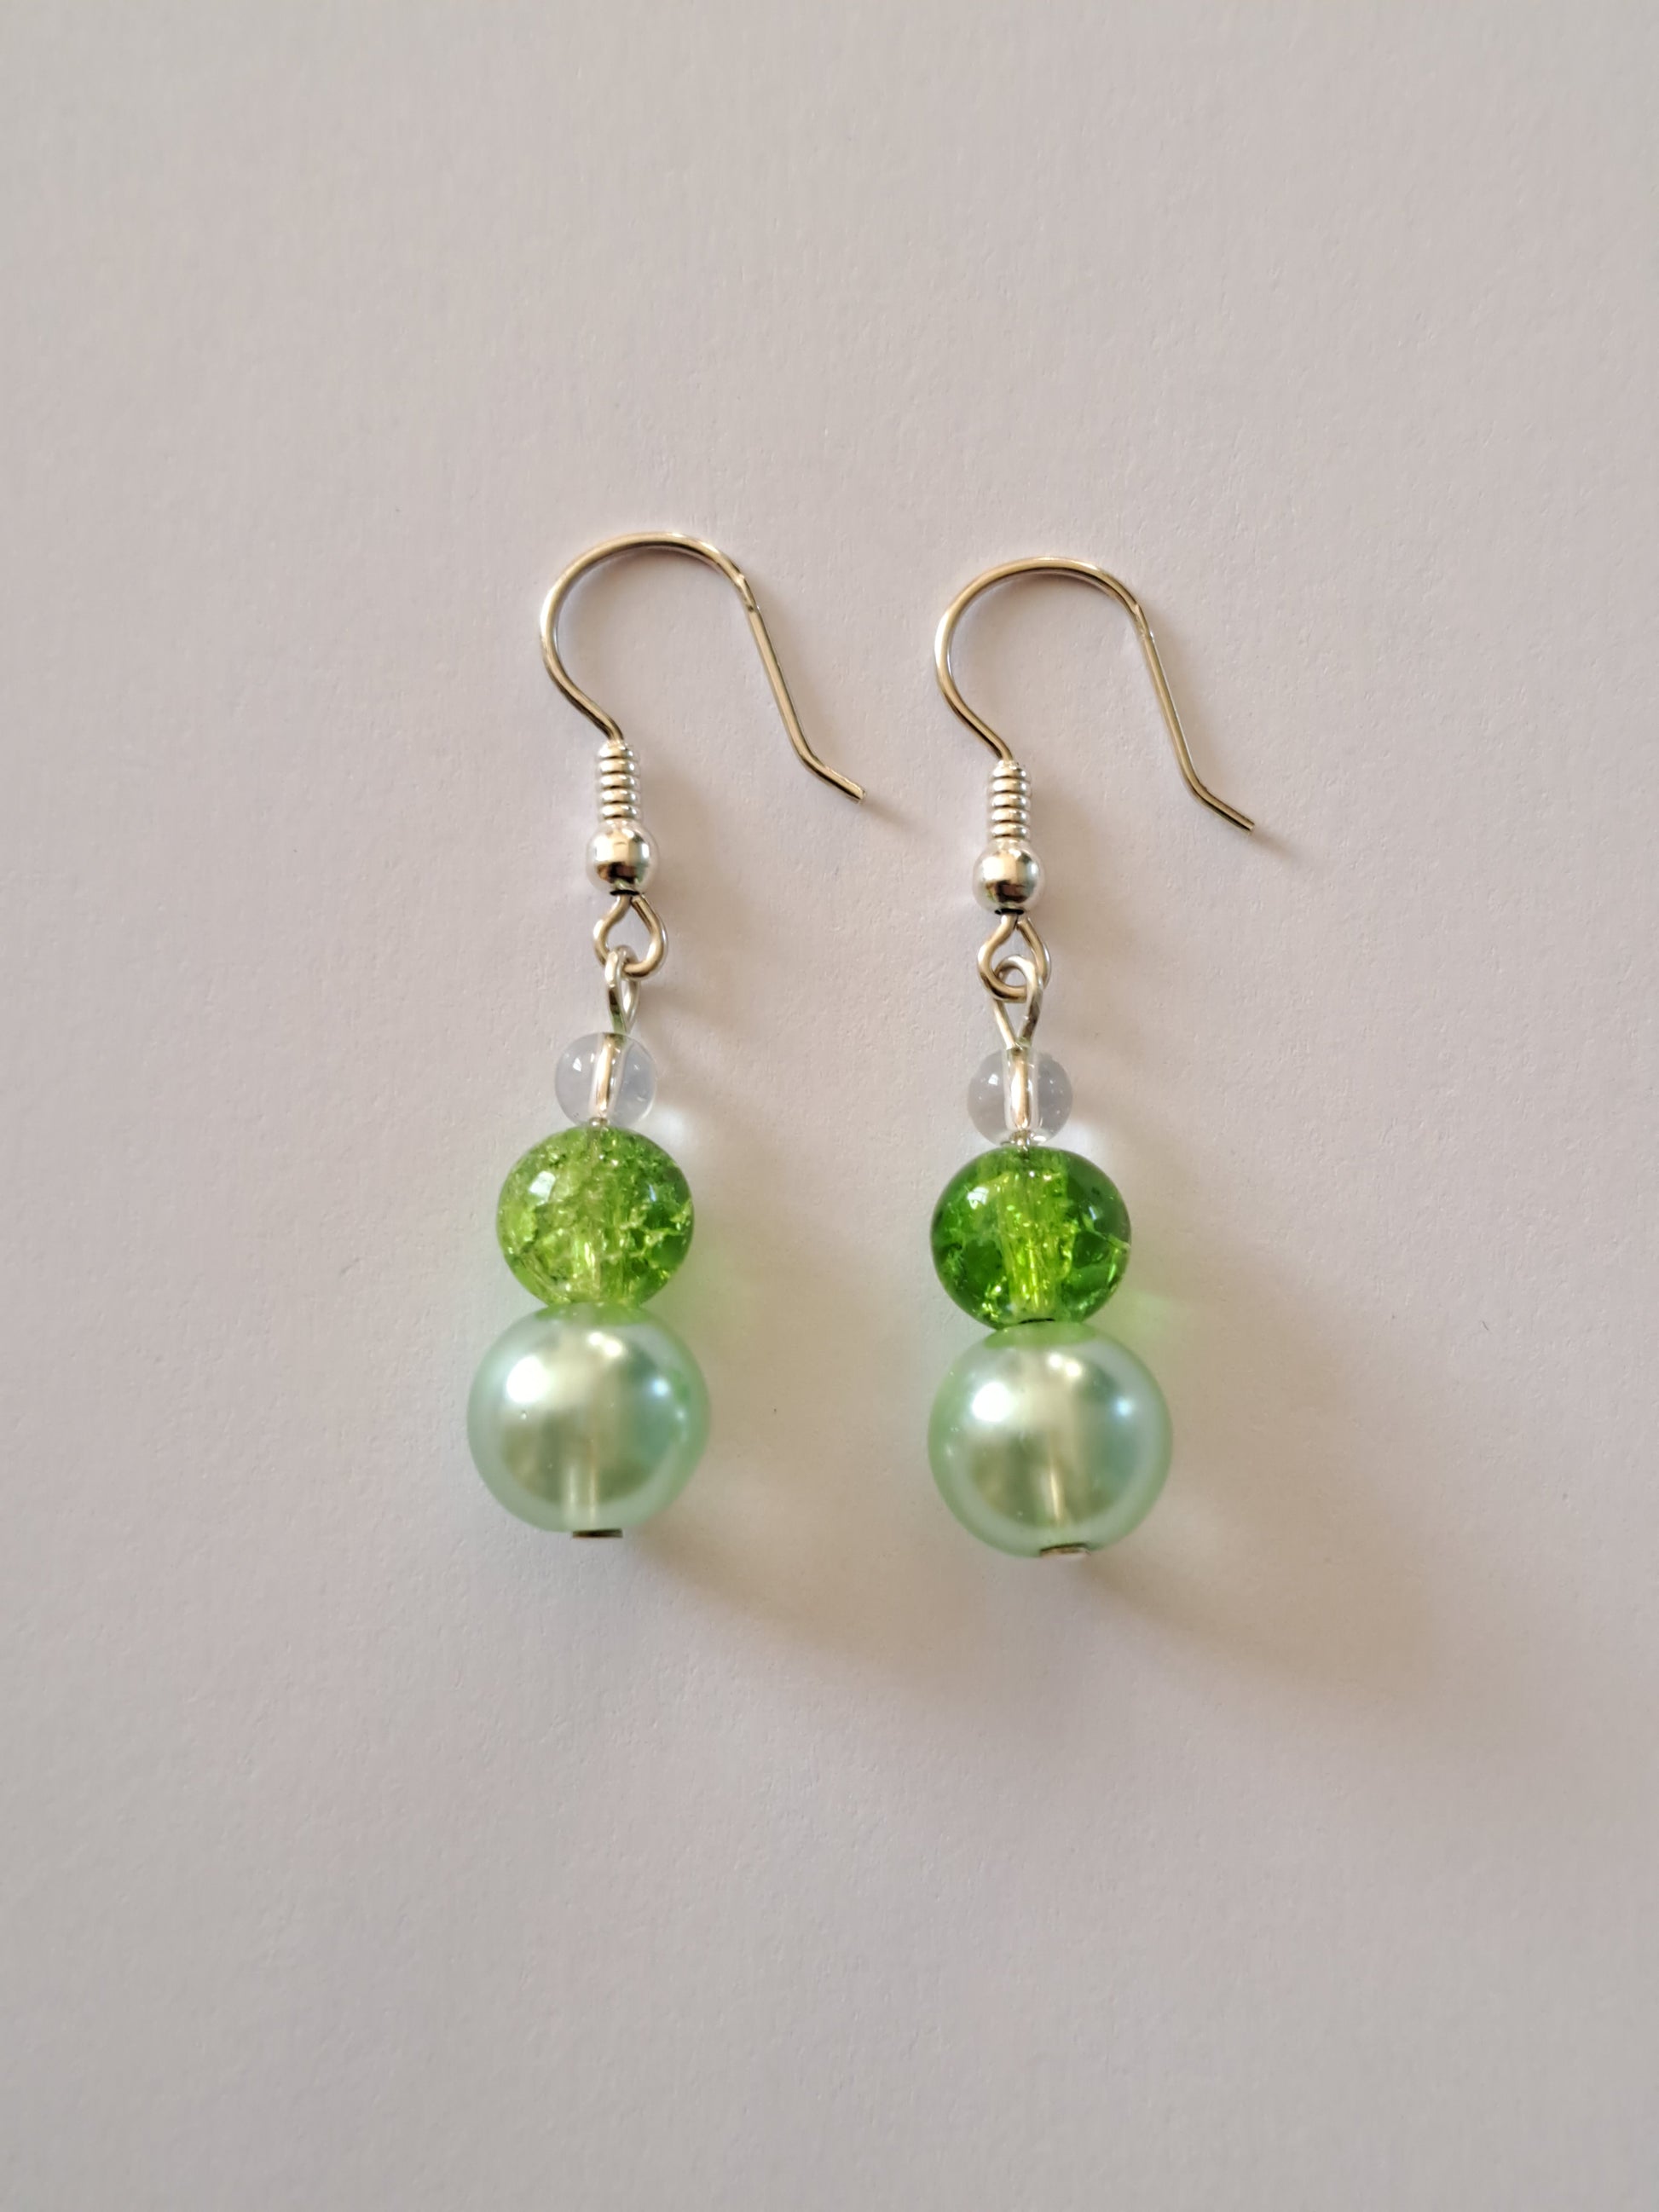 Boucles d'oreilles en argent avec perles nacrées et craquelées vertes. Site de bijoux en ligne. France